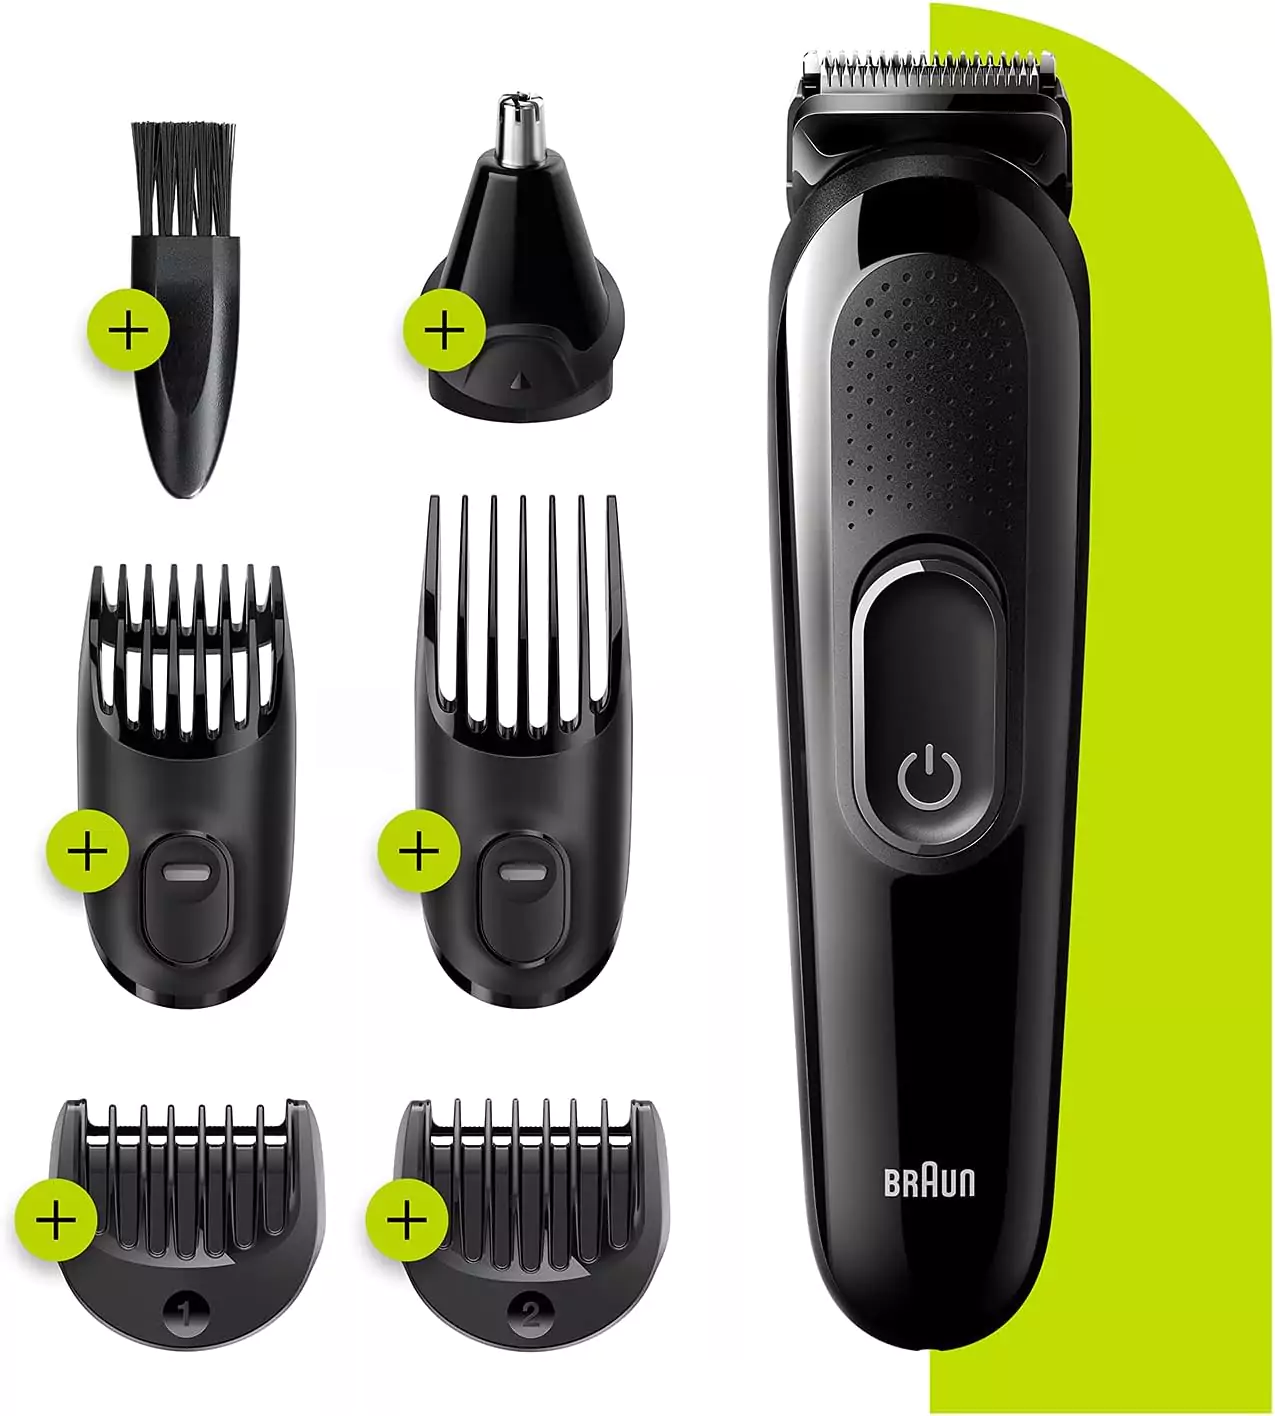 ماكينة حلاقة 6 في 1 متعددة الاستخدامات لتشذيب الشعر من براون، بلون اسود MGK3220